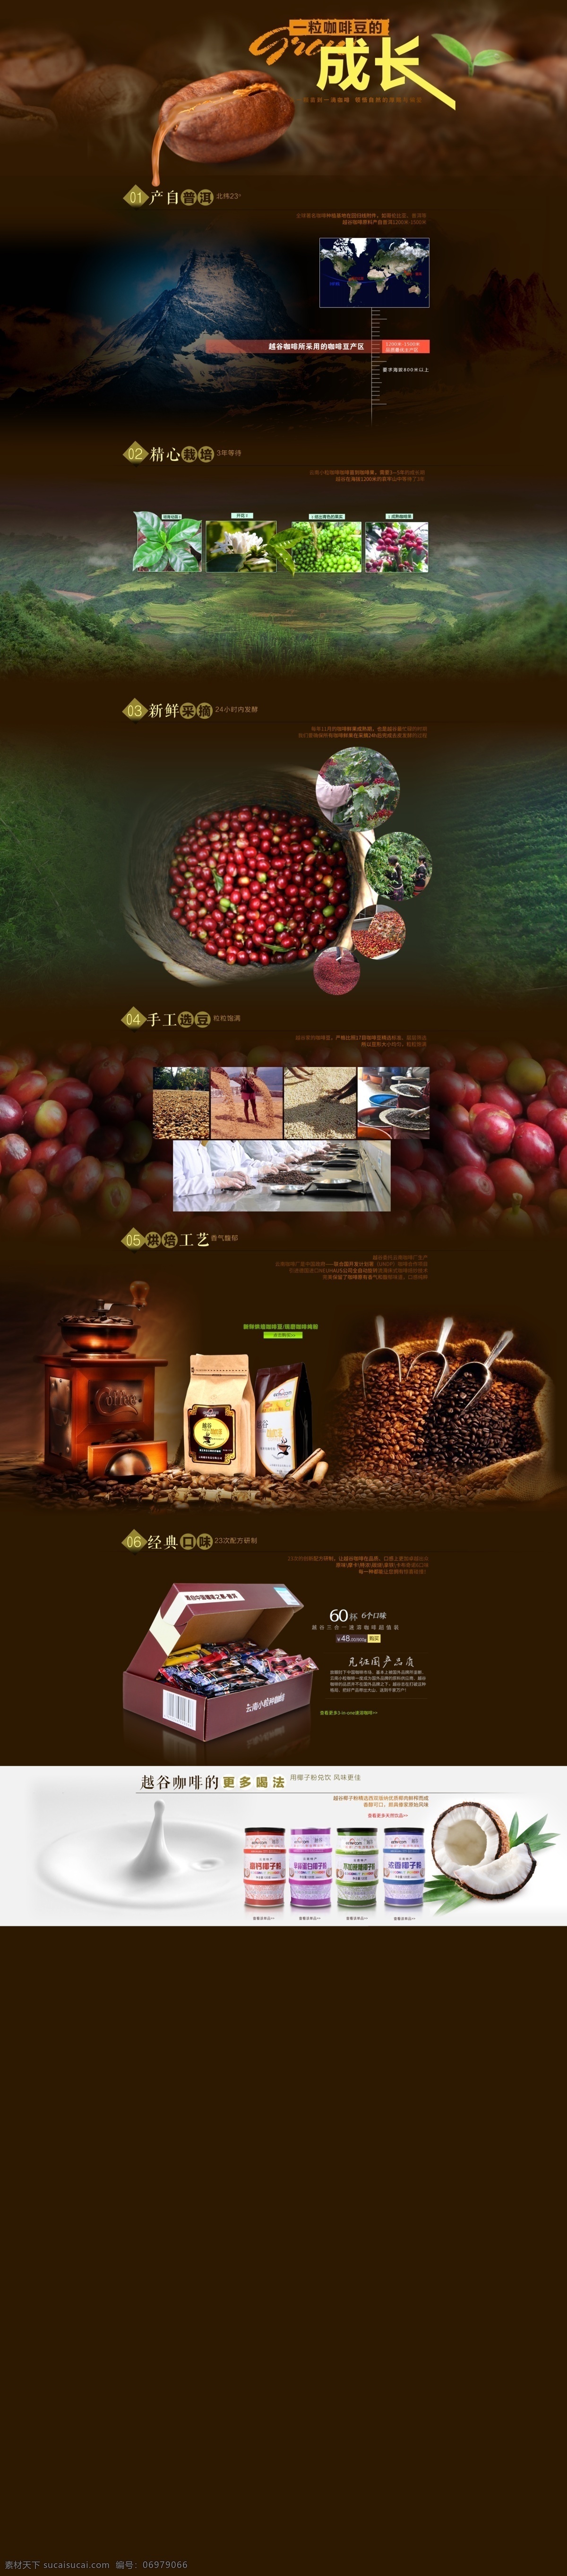 咖啡首页海报 咖啡 咖啡豆 首页模板 咖啡制作 咖啡品质 越谷咖啡 淘宝界面设计 淘宝装修模板